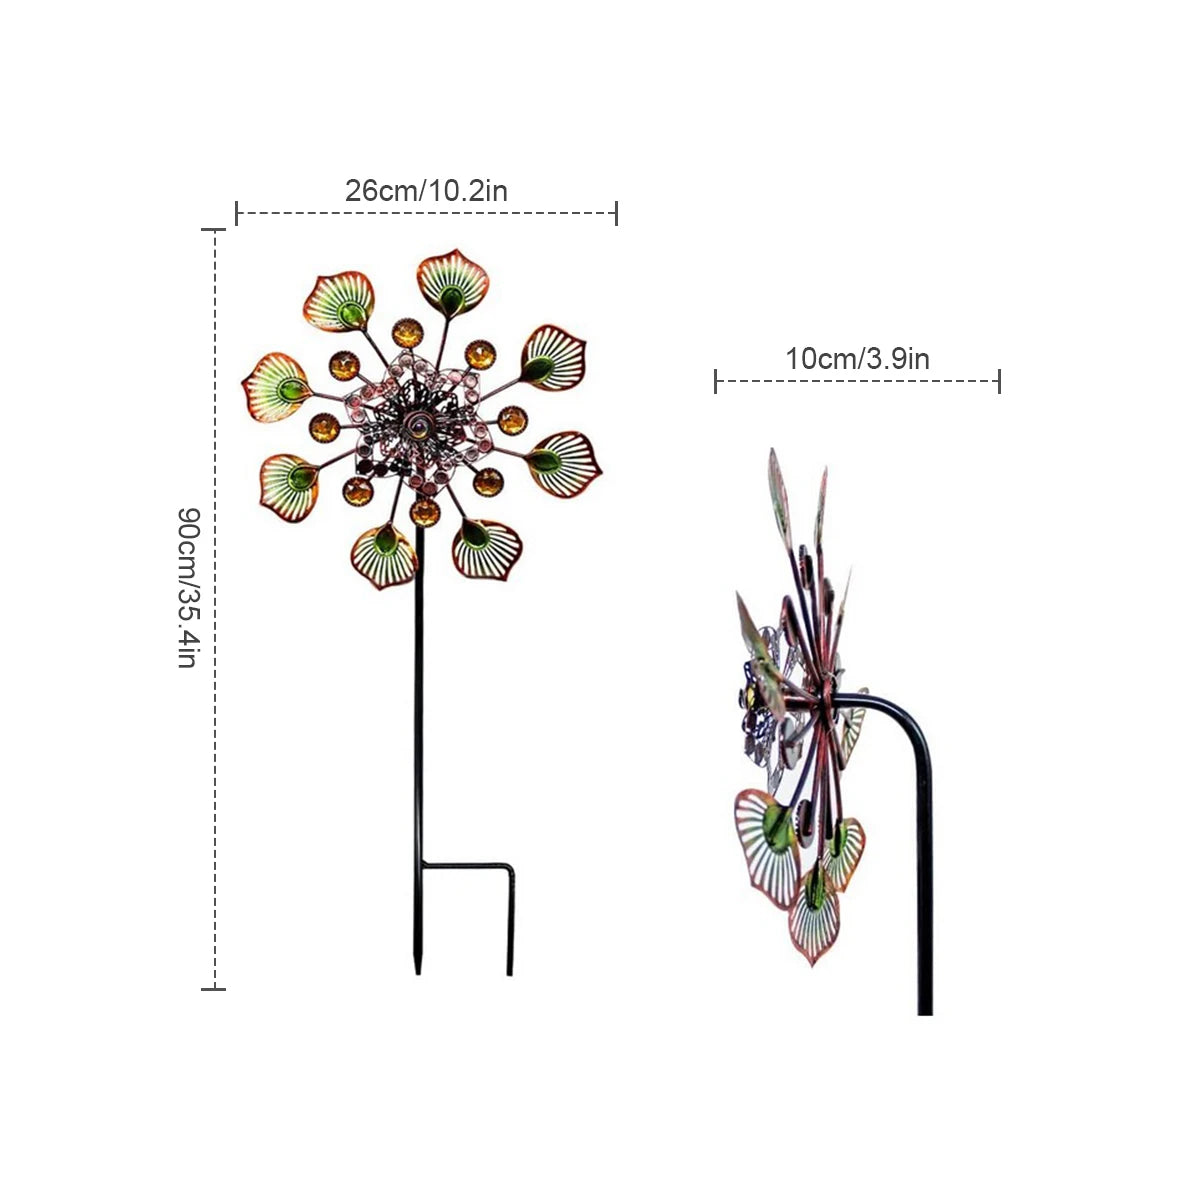 3D Kinetic Flower Wind Spinners met stabiele paal metalen windmolen reflecterend schilderij voor buitentuin Lawn Garden Decoratie